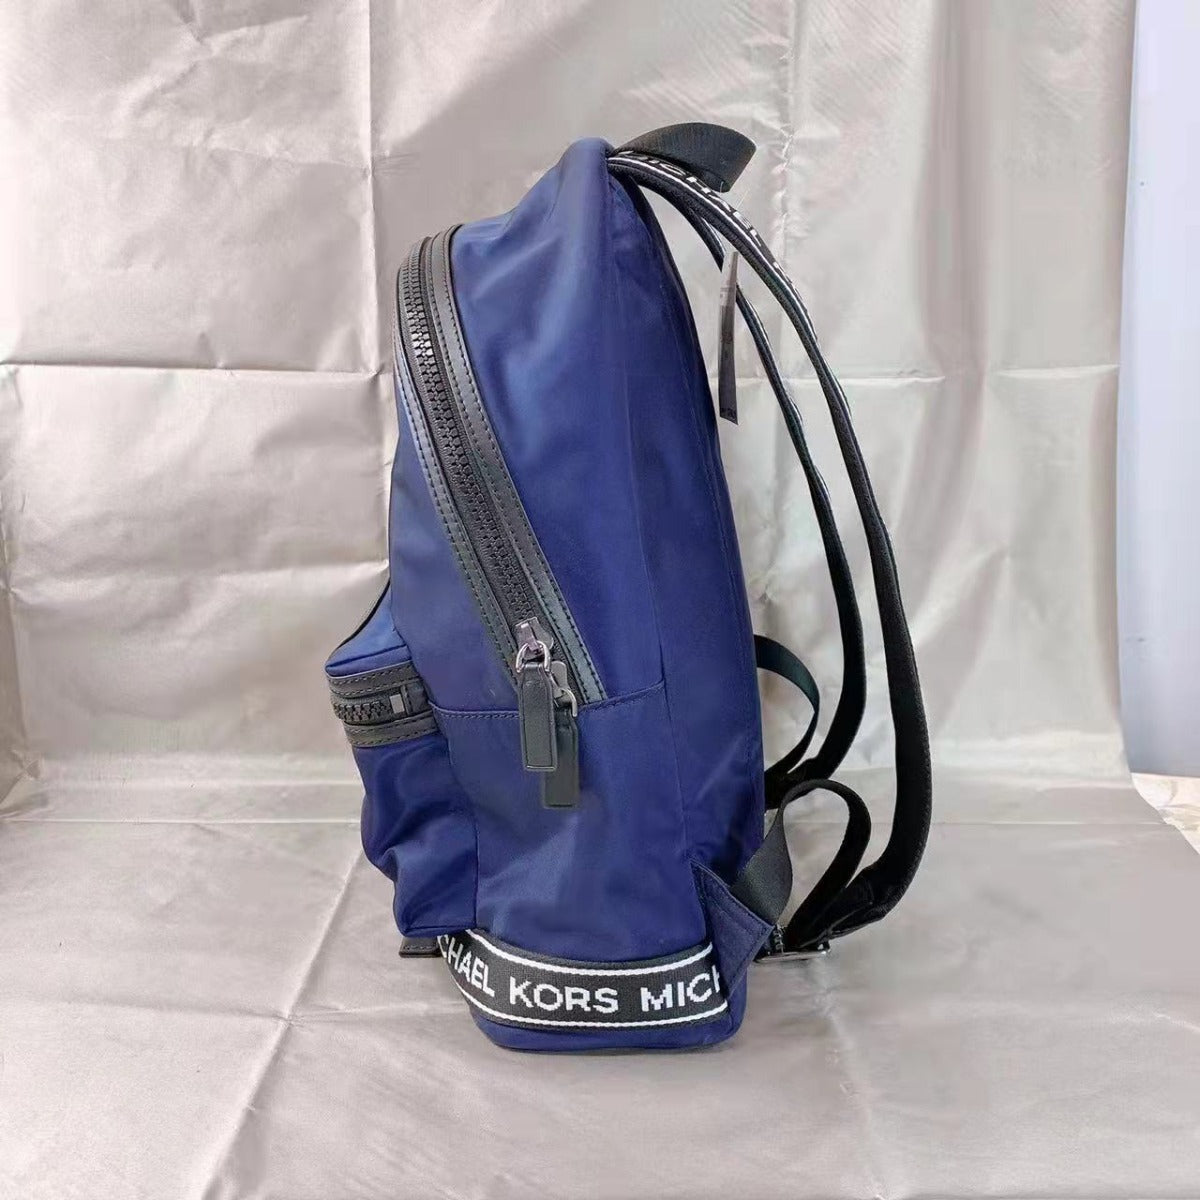 Michael Kors Kent 37S0SKNB2C Nylon Backpack In INDIGO